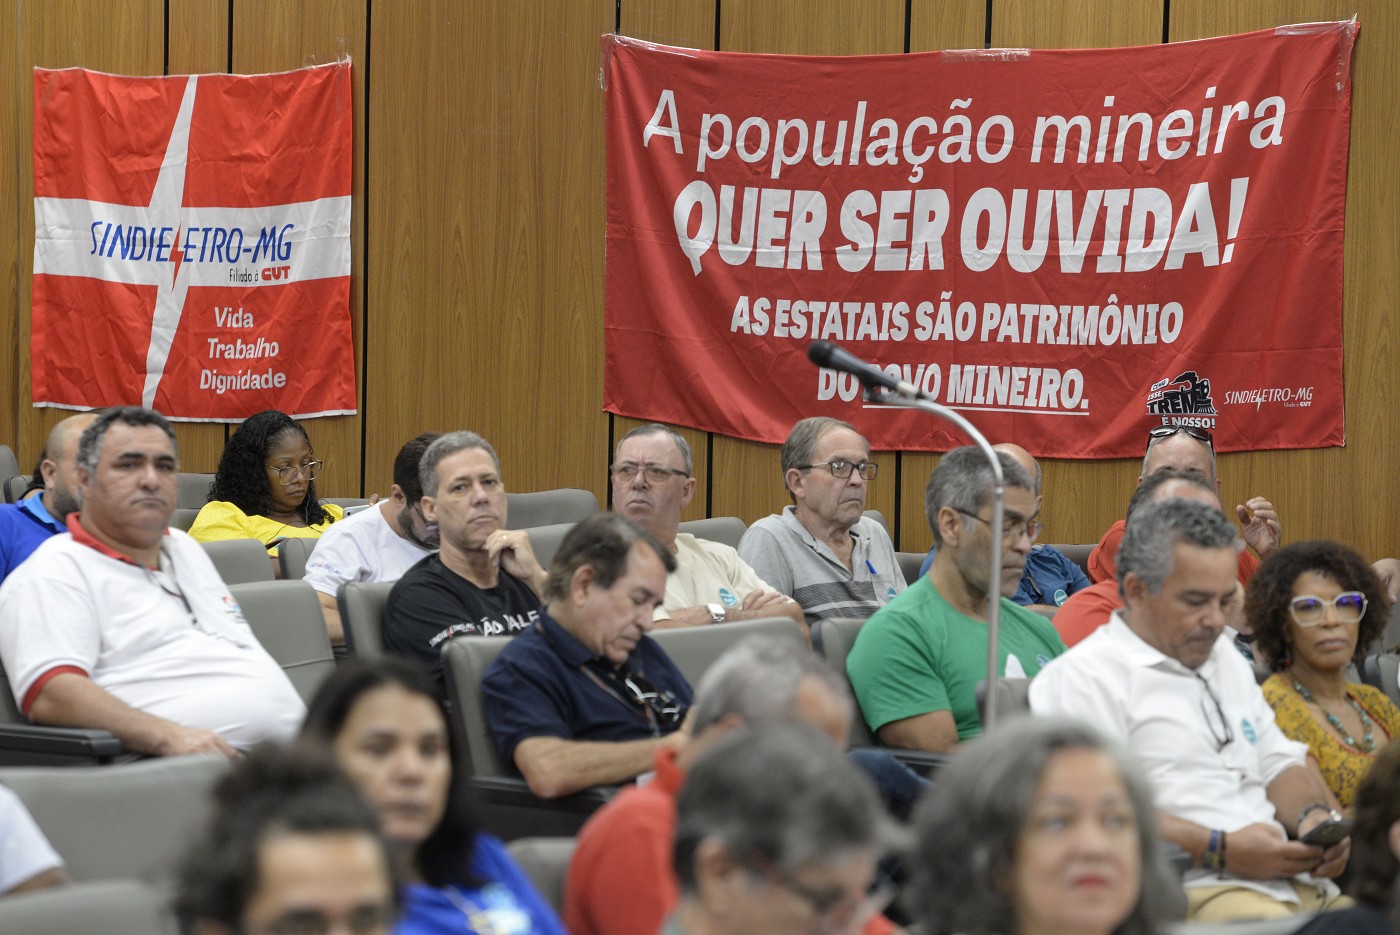 ALMG: Possível privatização da Cemig e Copasa causaria aumento de tarifas